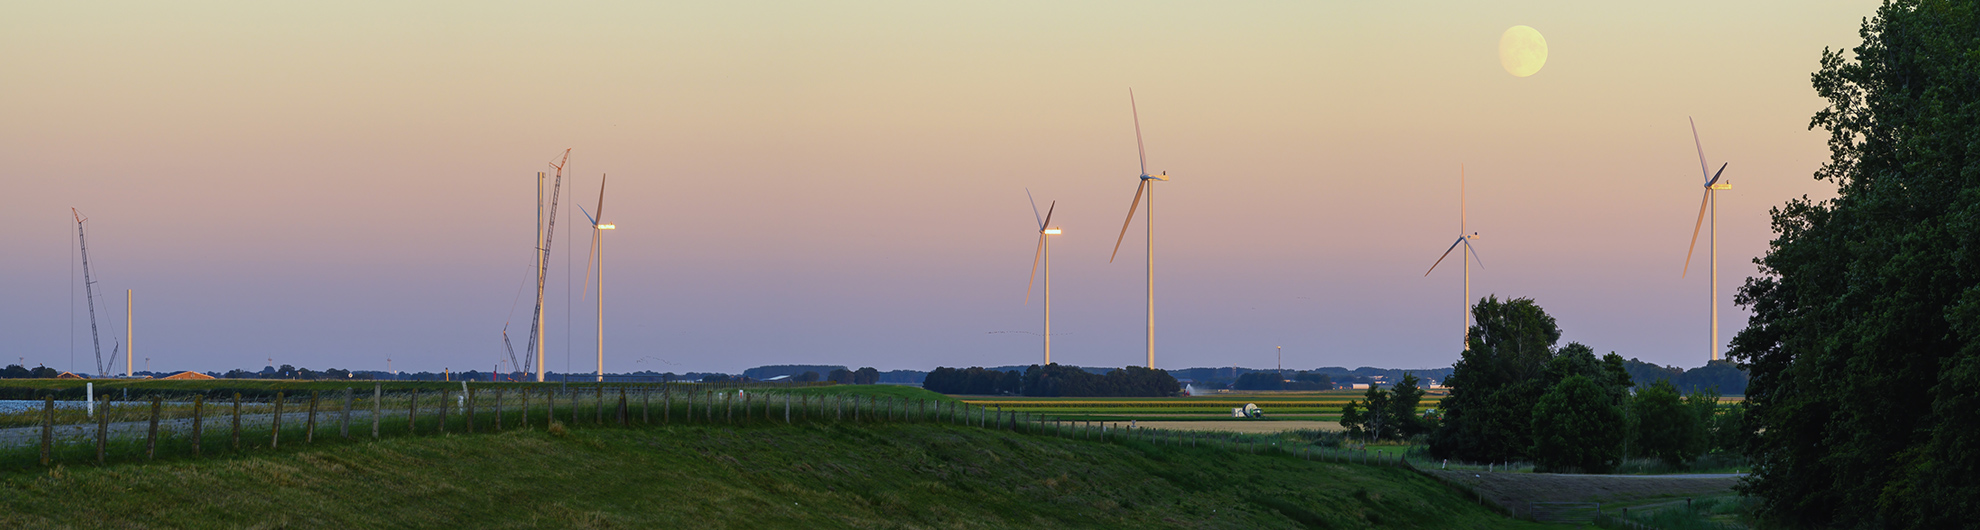 Windplan Dronten © Pieter Bosch Fotografie